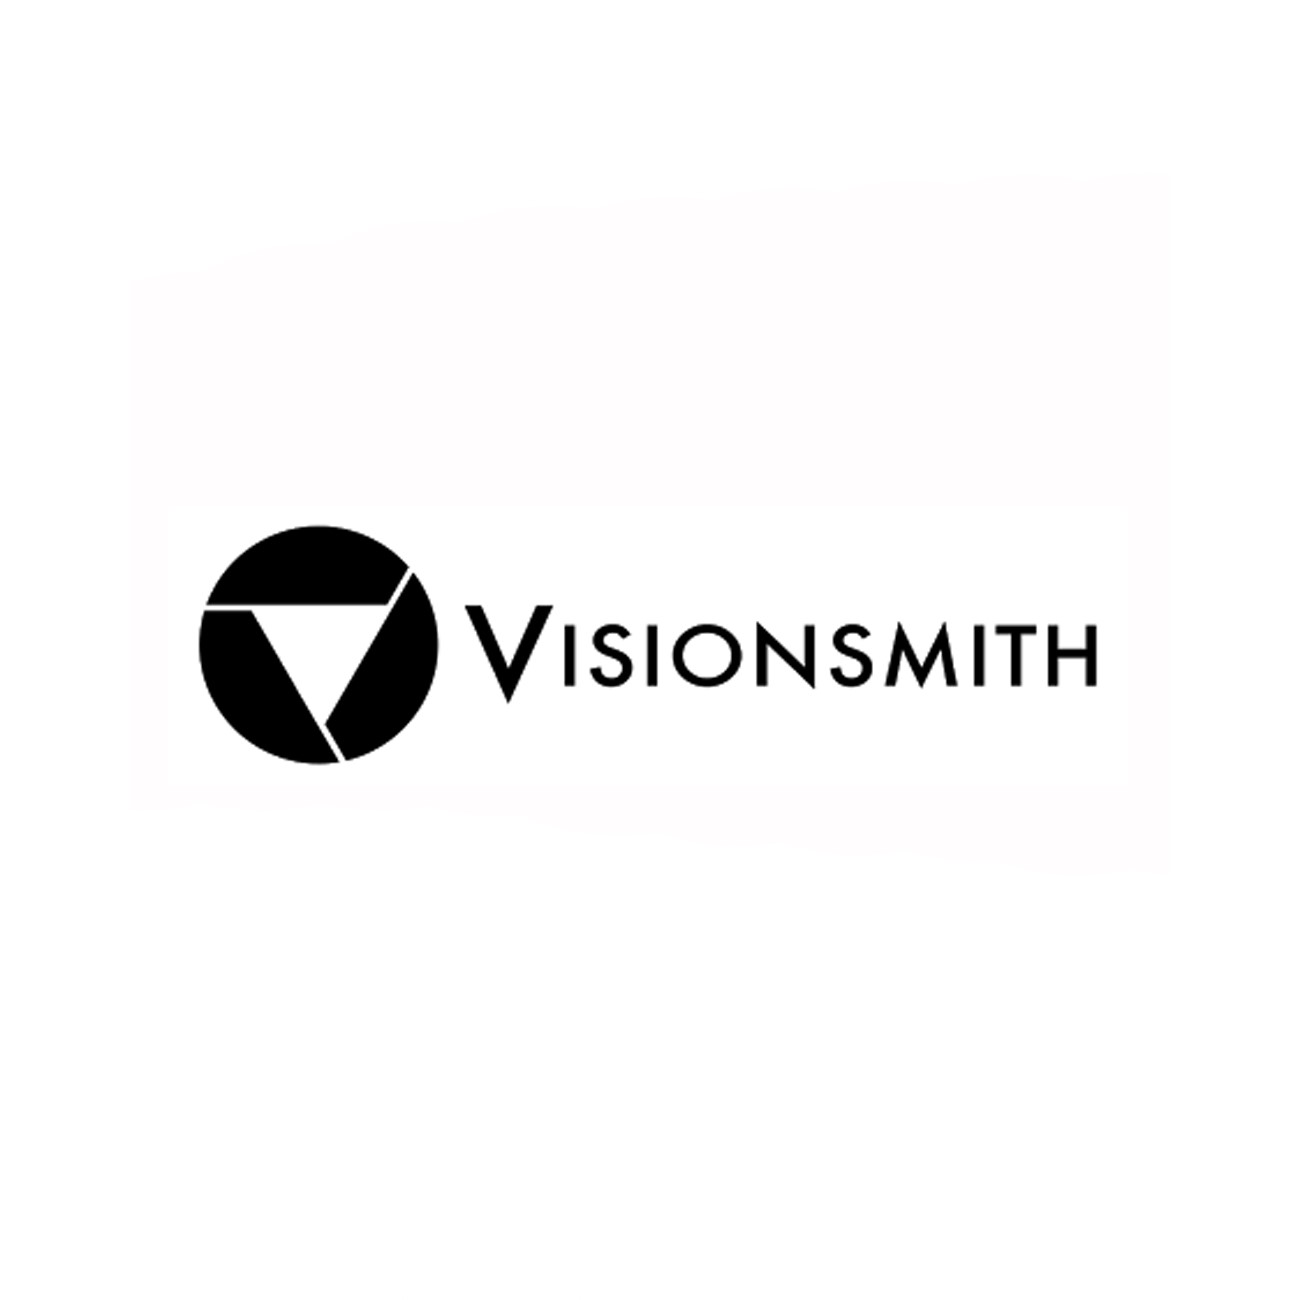 Visionsmith